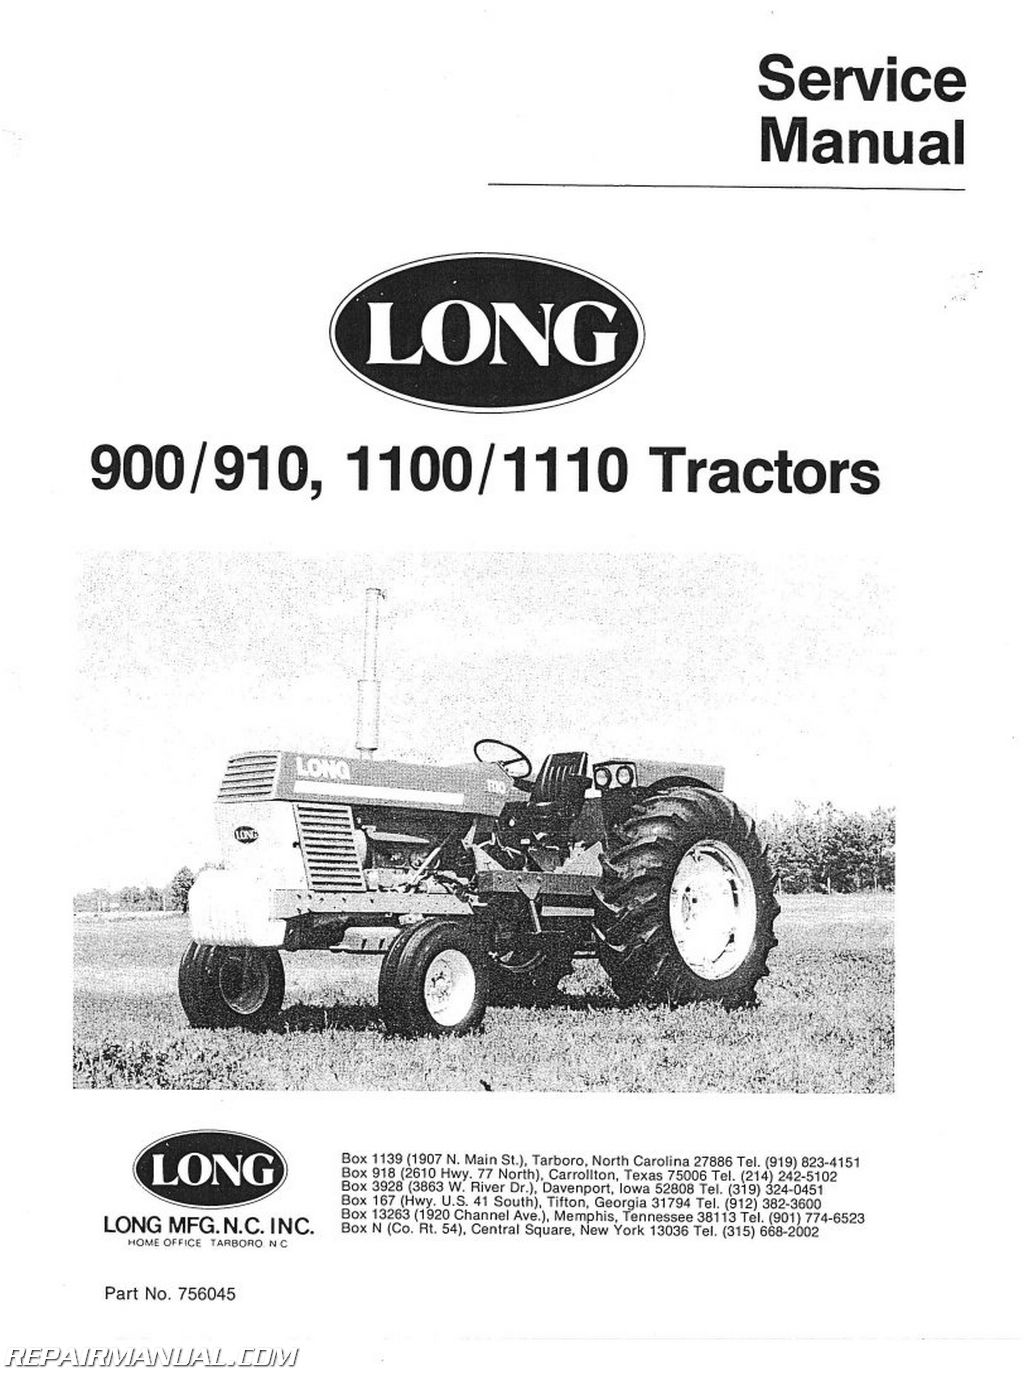 Home / Tractor Manuals / Long Tractor Manuals / Long 900 910 1100 1110 ...